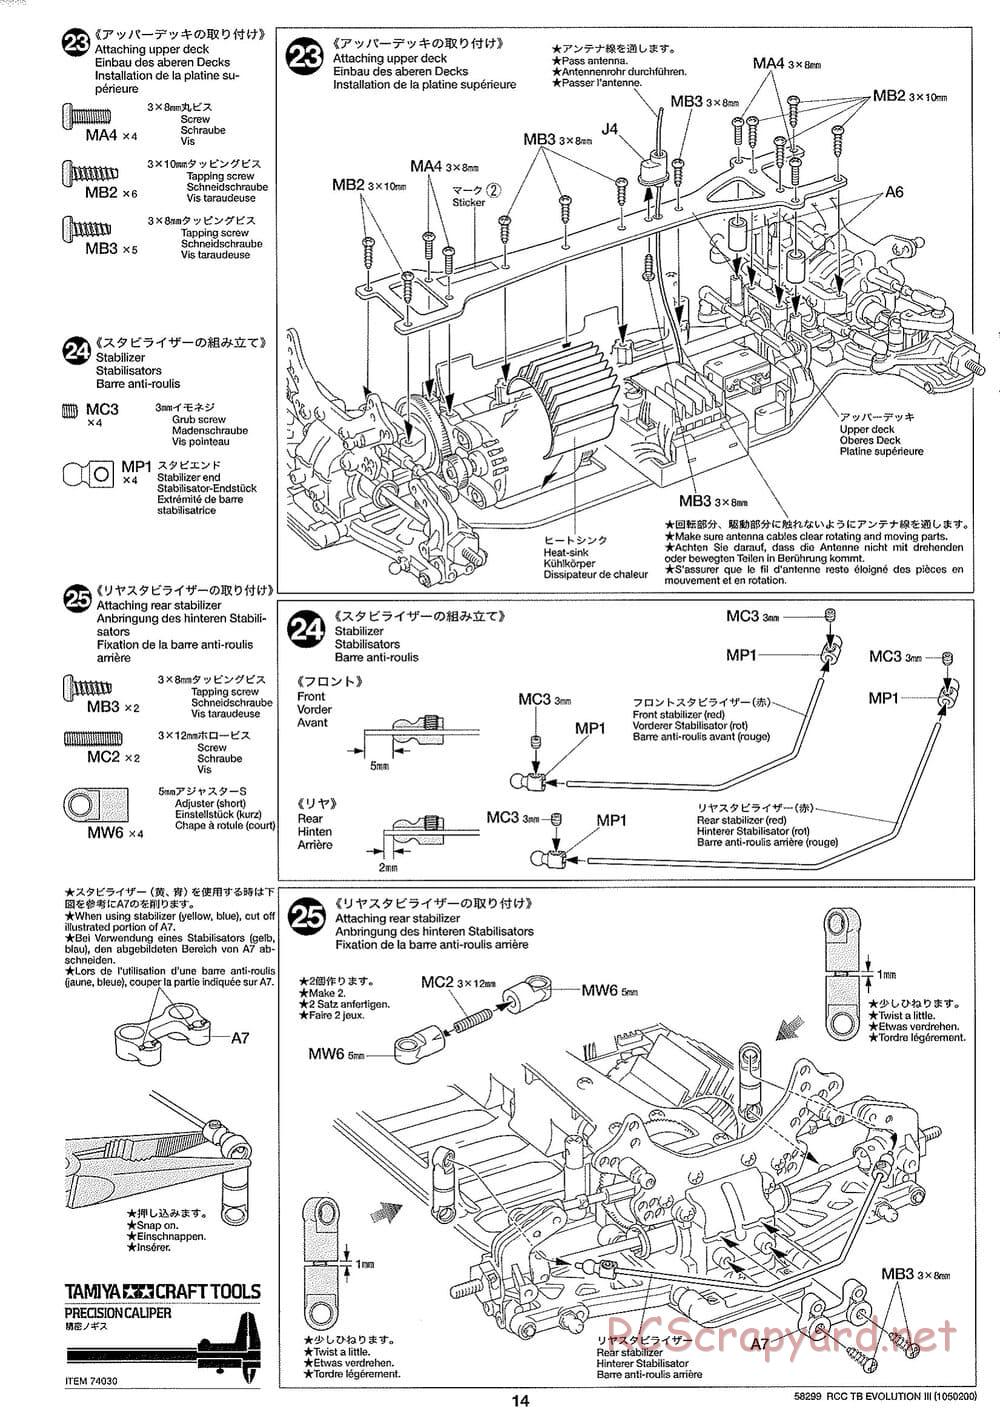 Tamiya - TB Evolution III Chassis - Manual - Page 15